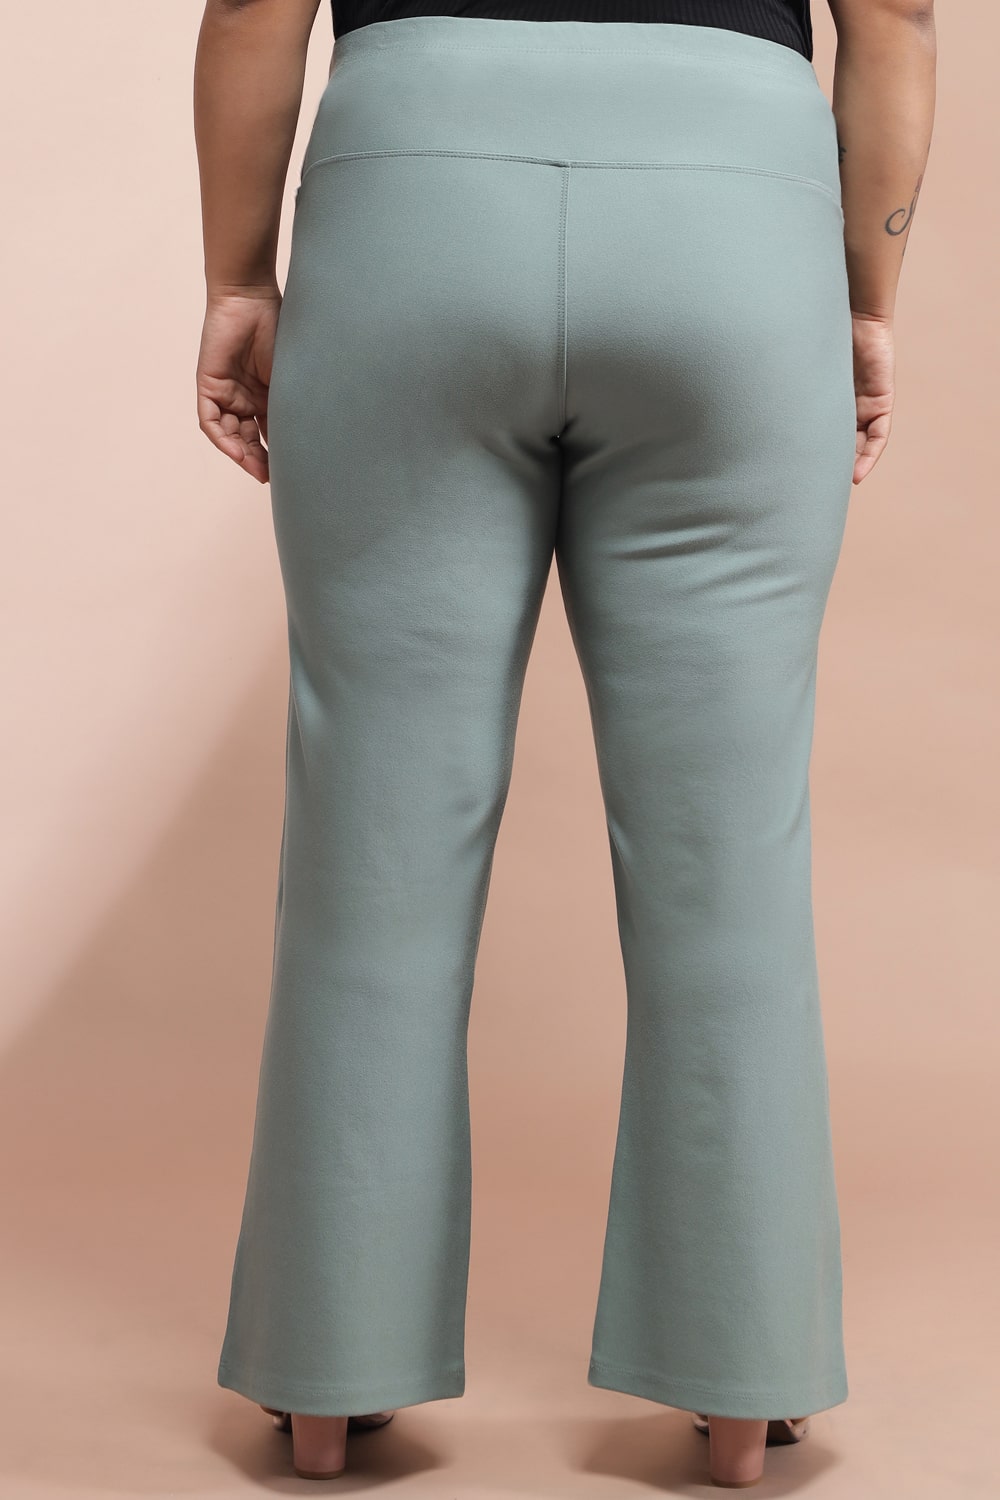 Buy Women Olive Roma Bell Bottom Pants Online At Best Price - Sassafras.in